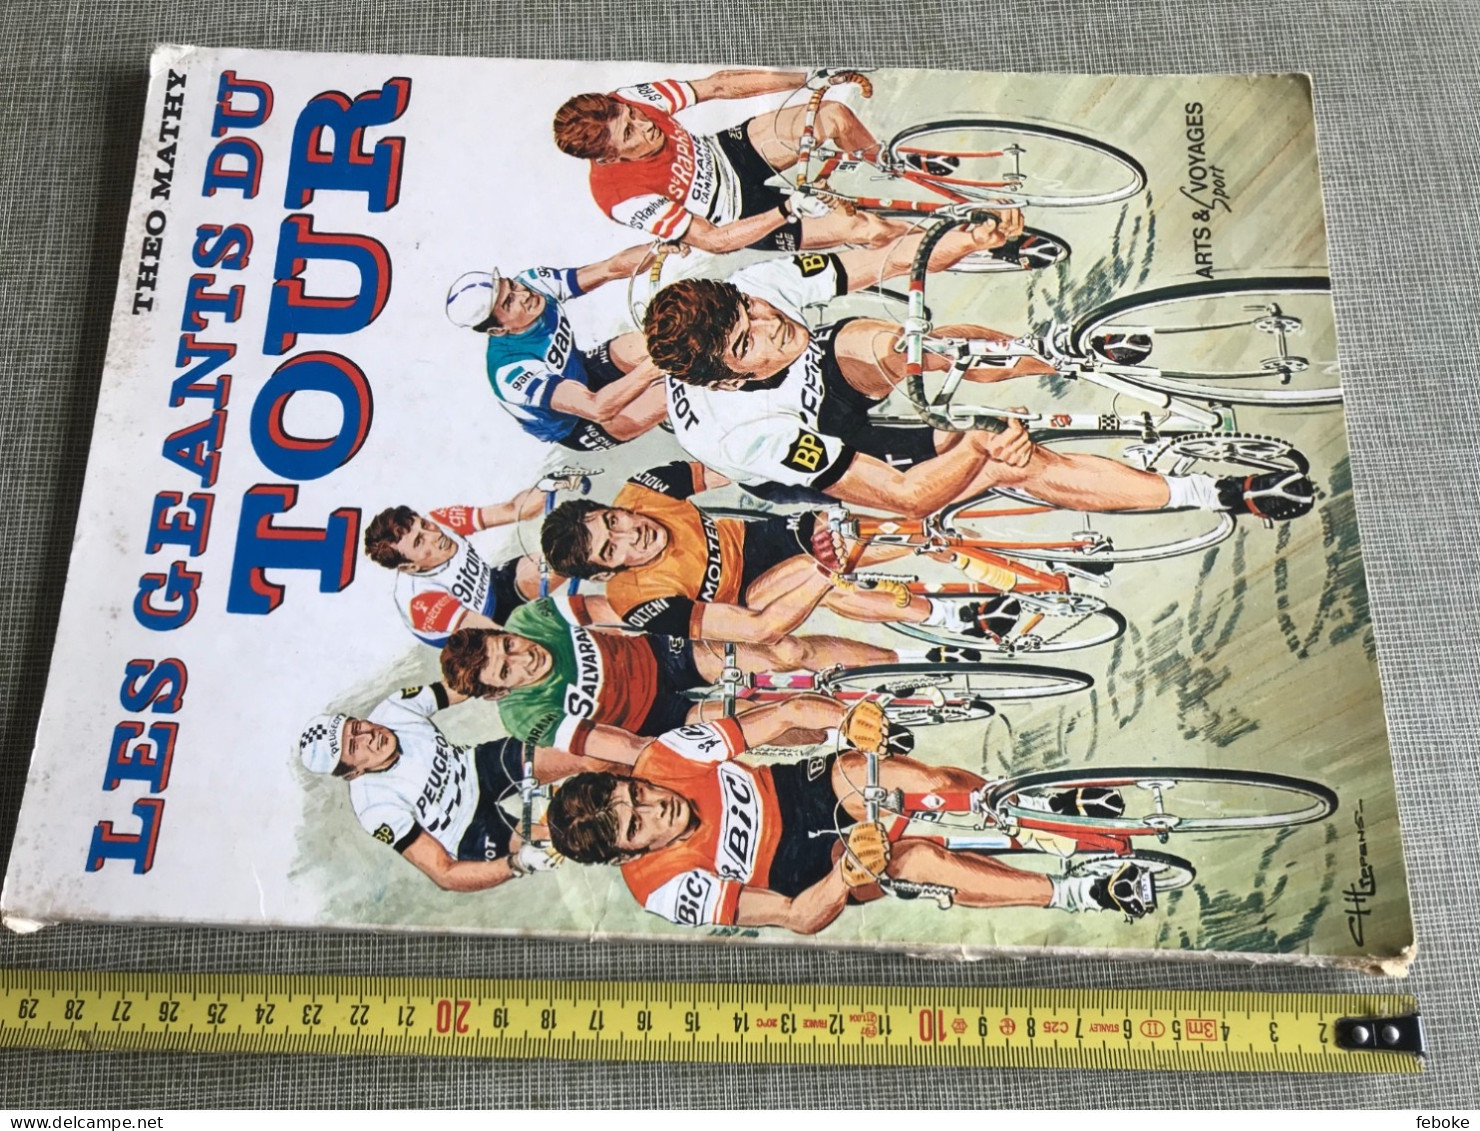 LES GÉANTS DU TOUR THÉO MATHY ARTS & VOYAGES SPORT 1976 CYCLISME VINTAGE - Sport